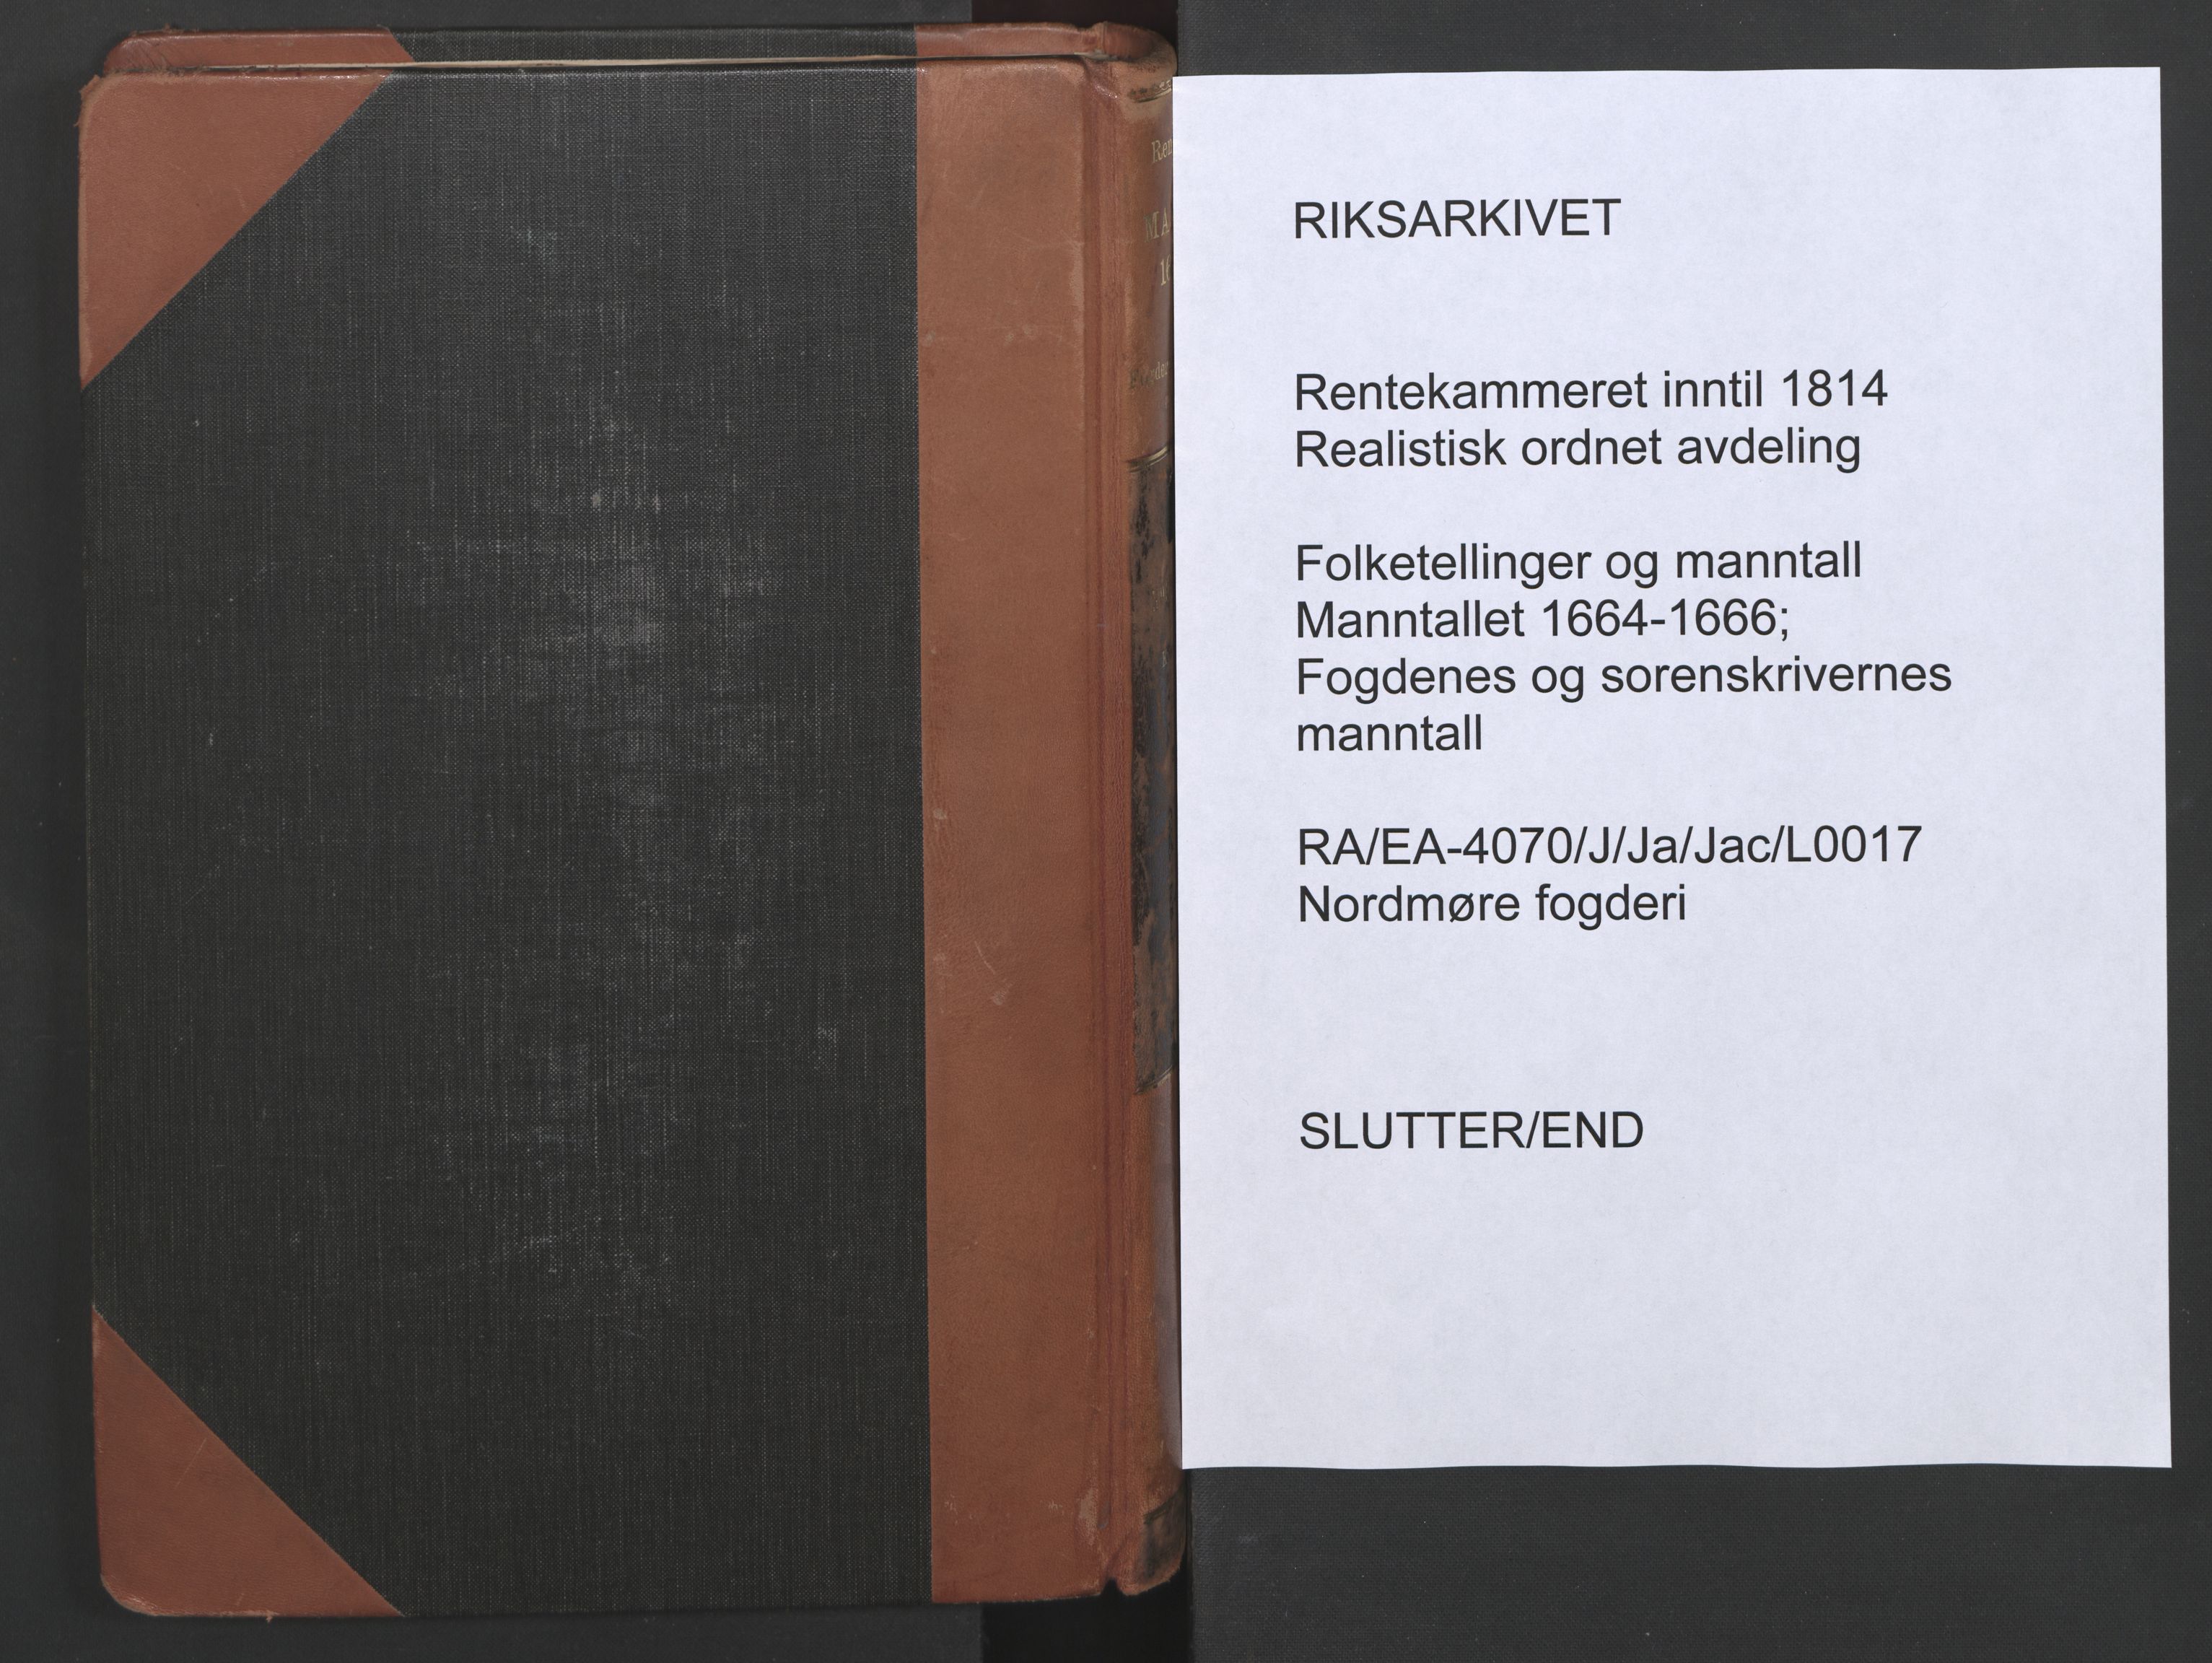 RA, Bailiff's Census 1664-1666, no. 17: Nordmøre fogderi, 1664